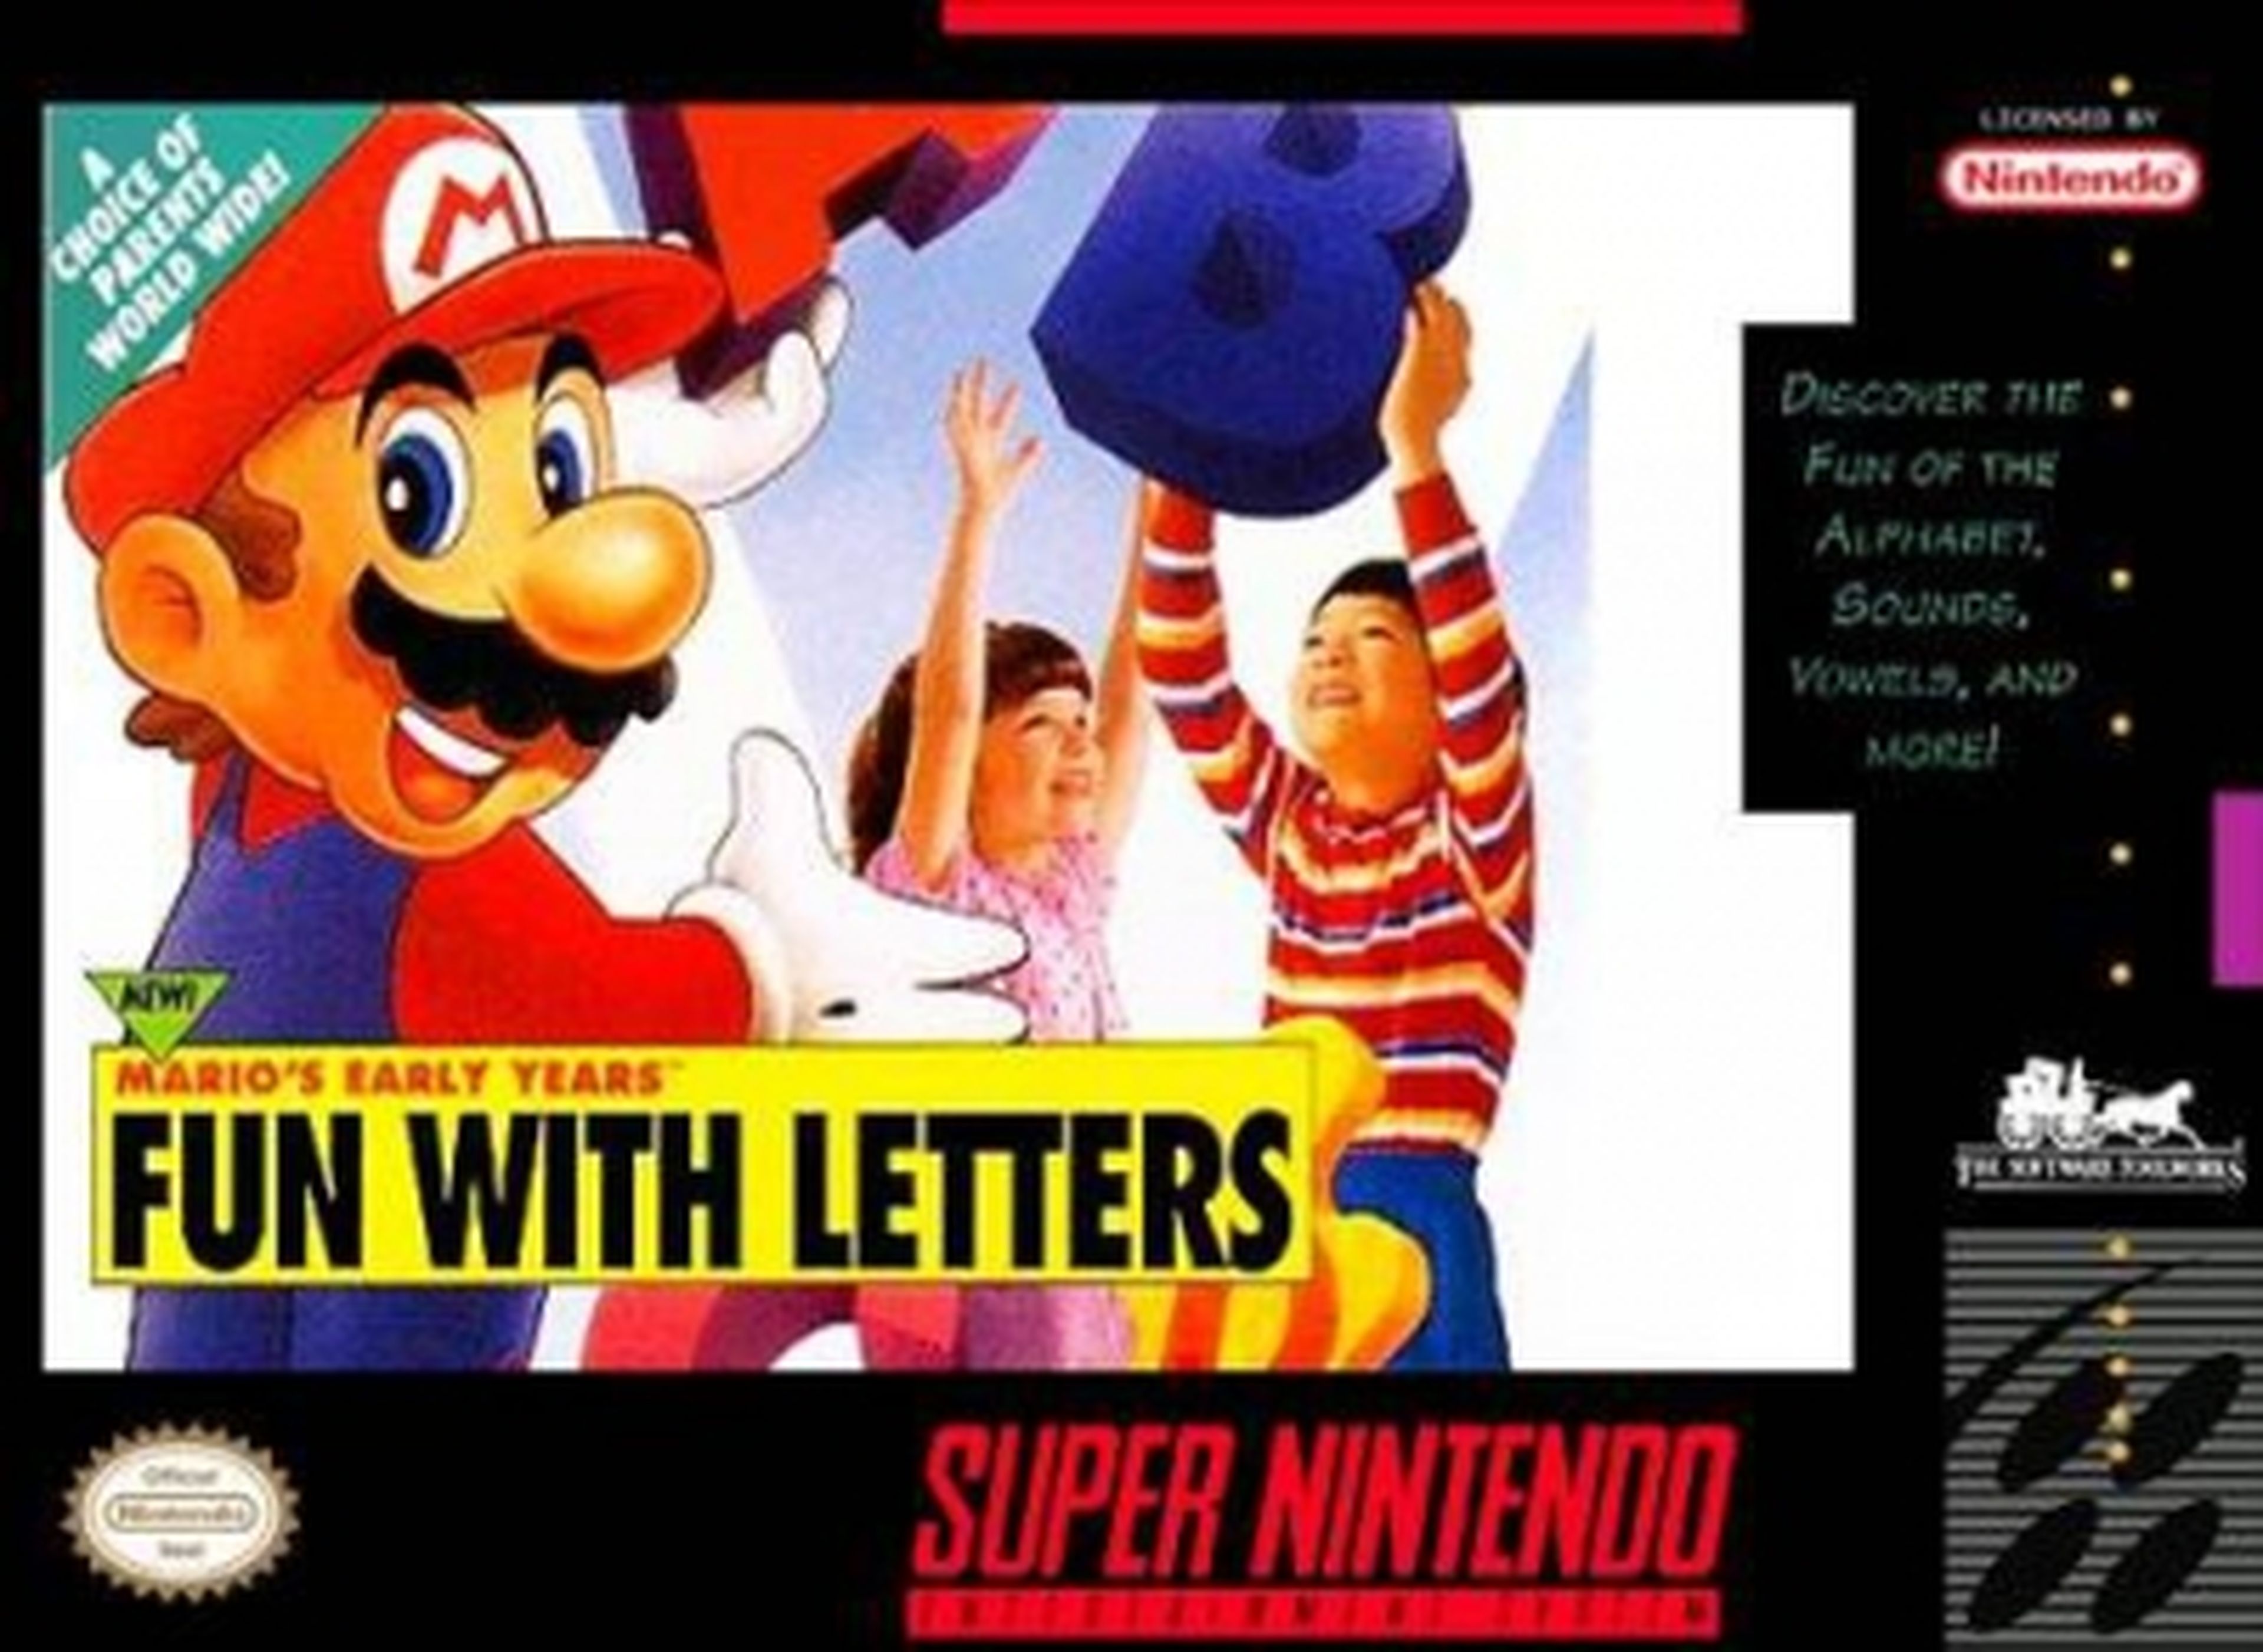 Club Chistendo: El pasado más turbio de Mario